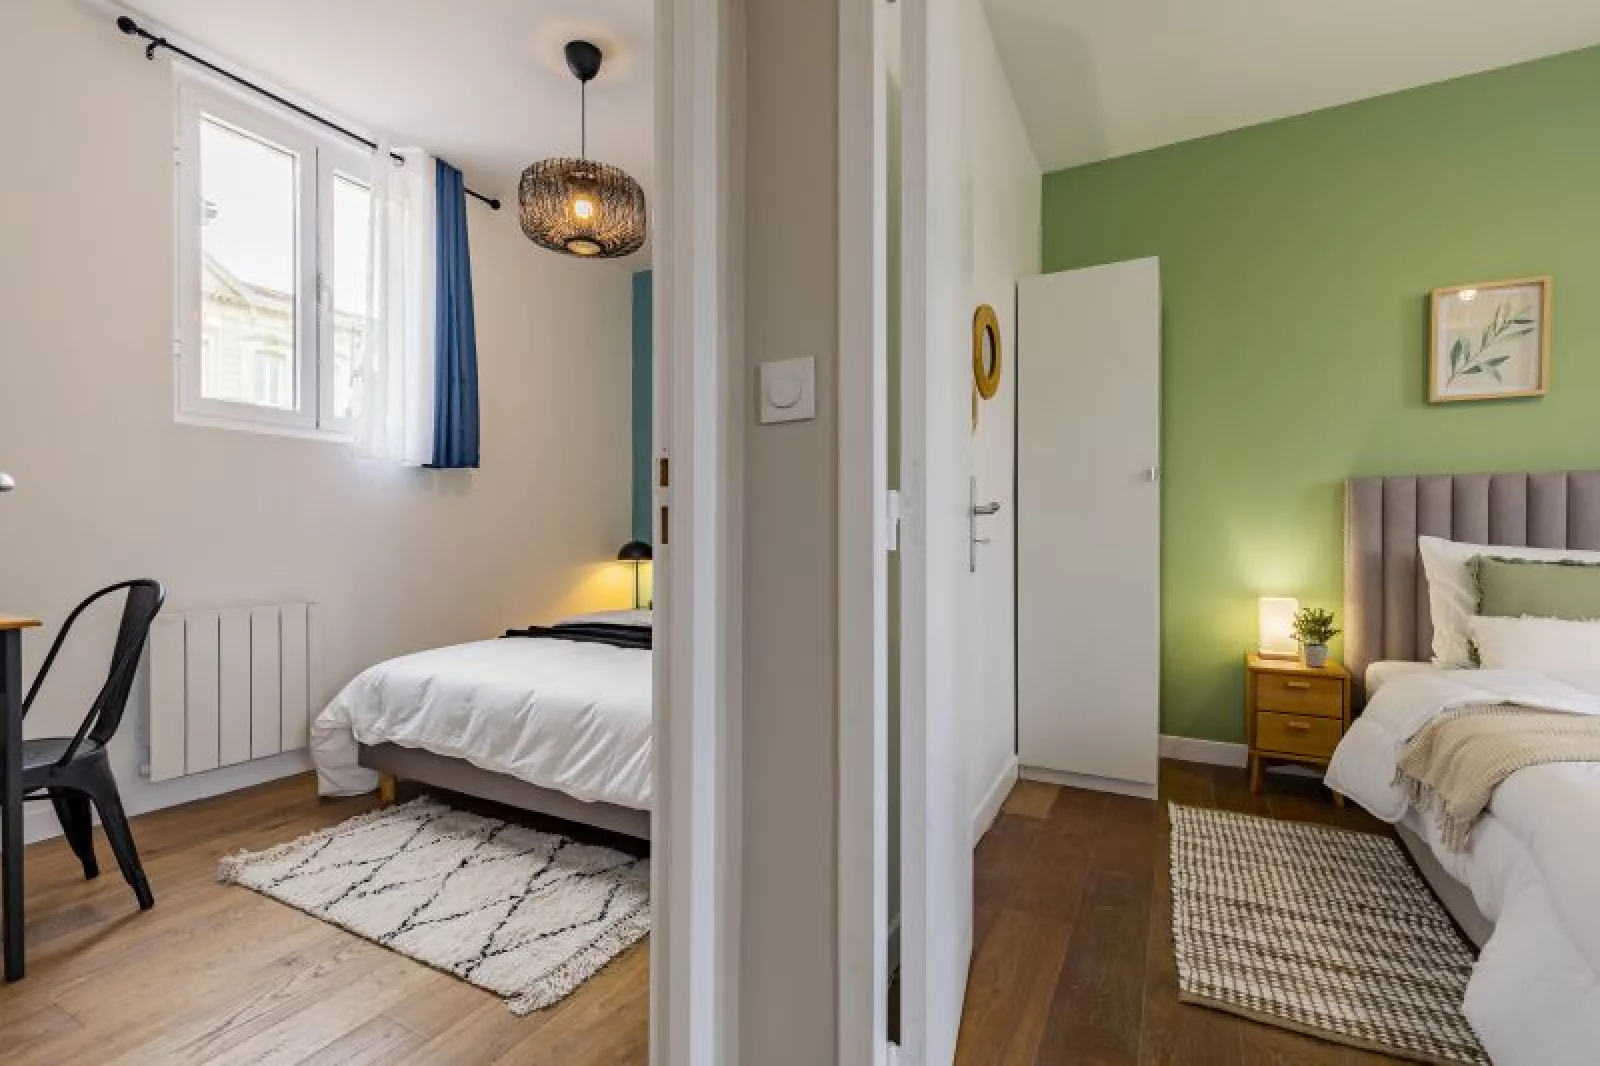 Location appartement meublé 3 pièces 47m² (Bordeaux - Mériadeck)